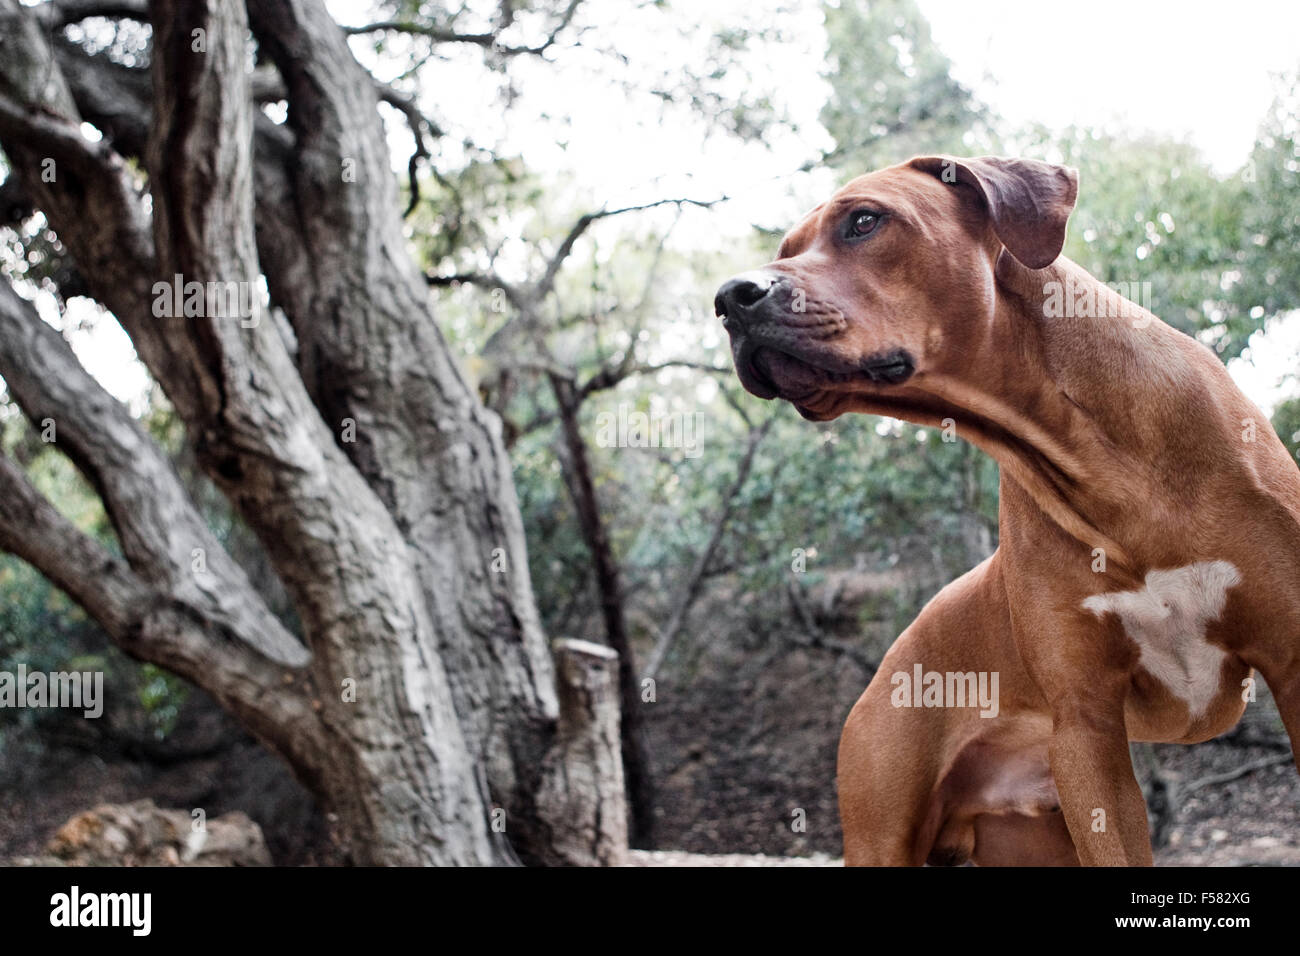 Il grassetto e il potente ritratto del maschio adulto Ridgeback rhodesiano cane in natura guardando al di fuori della fotocamera con bellissimi alberi in background Foto Stock